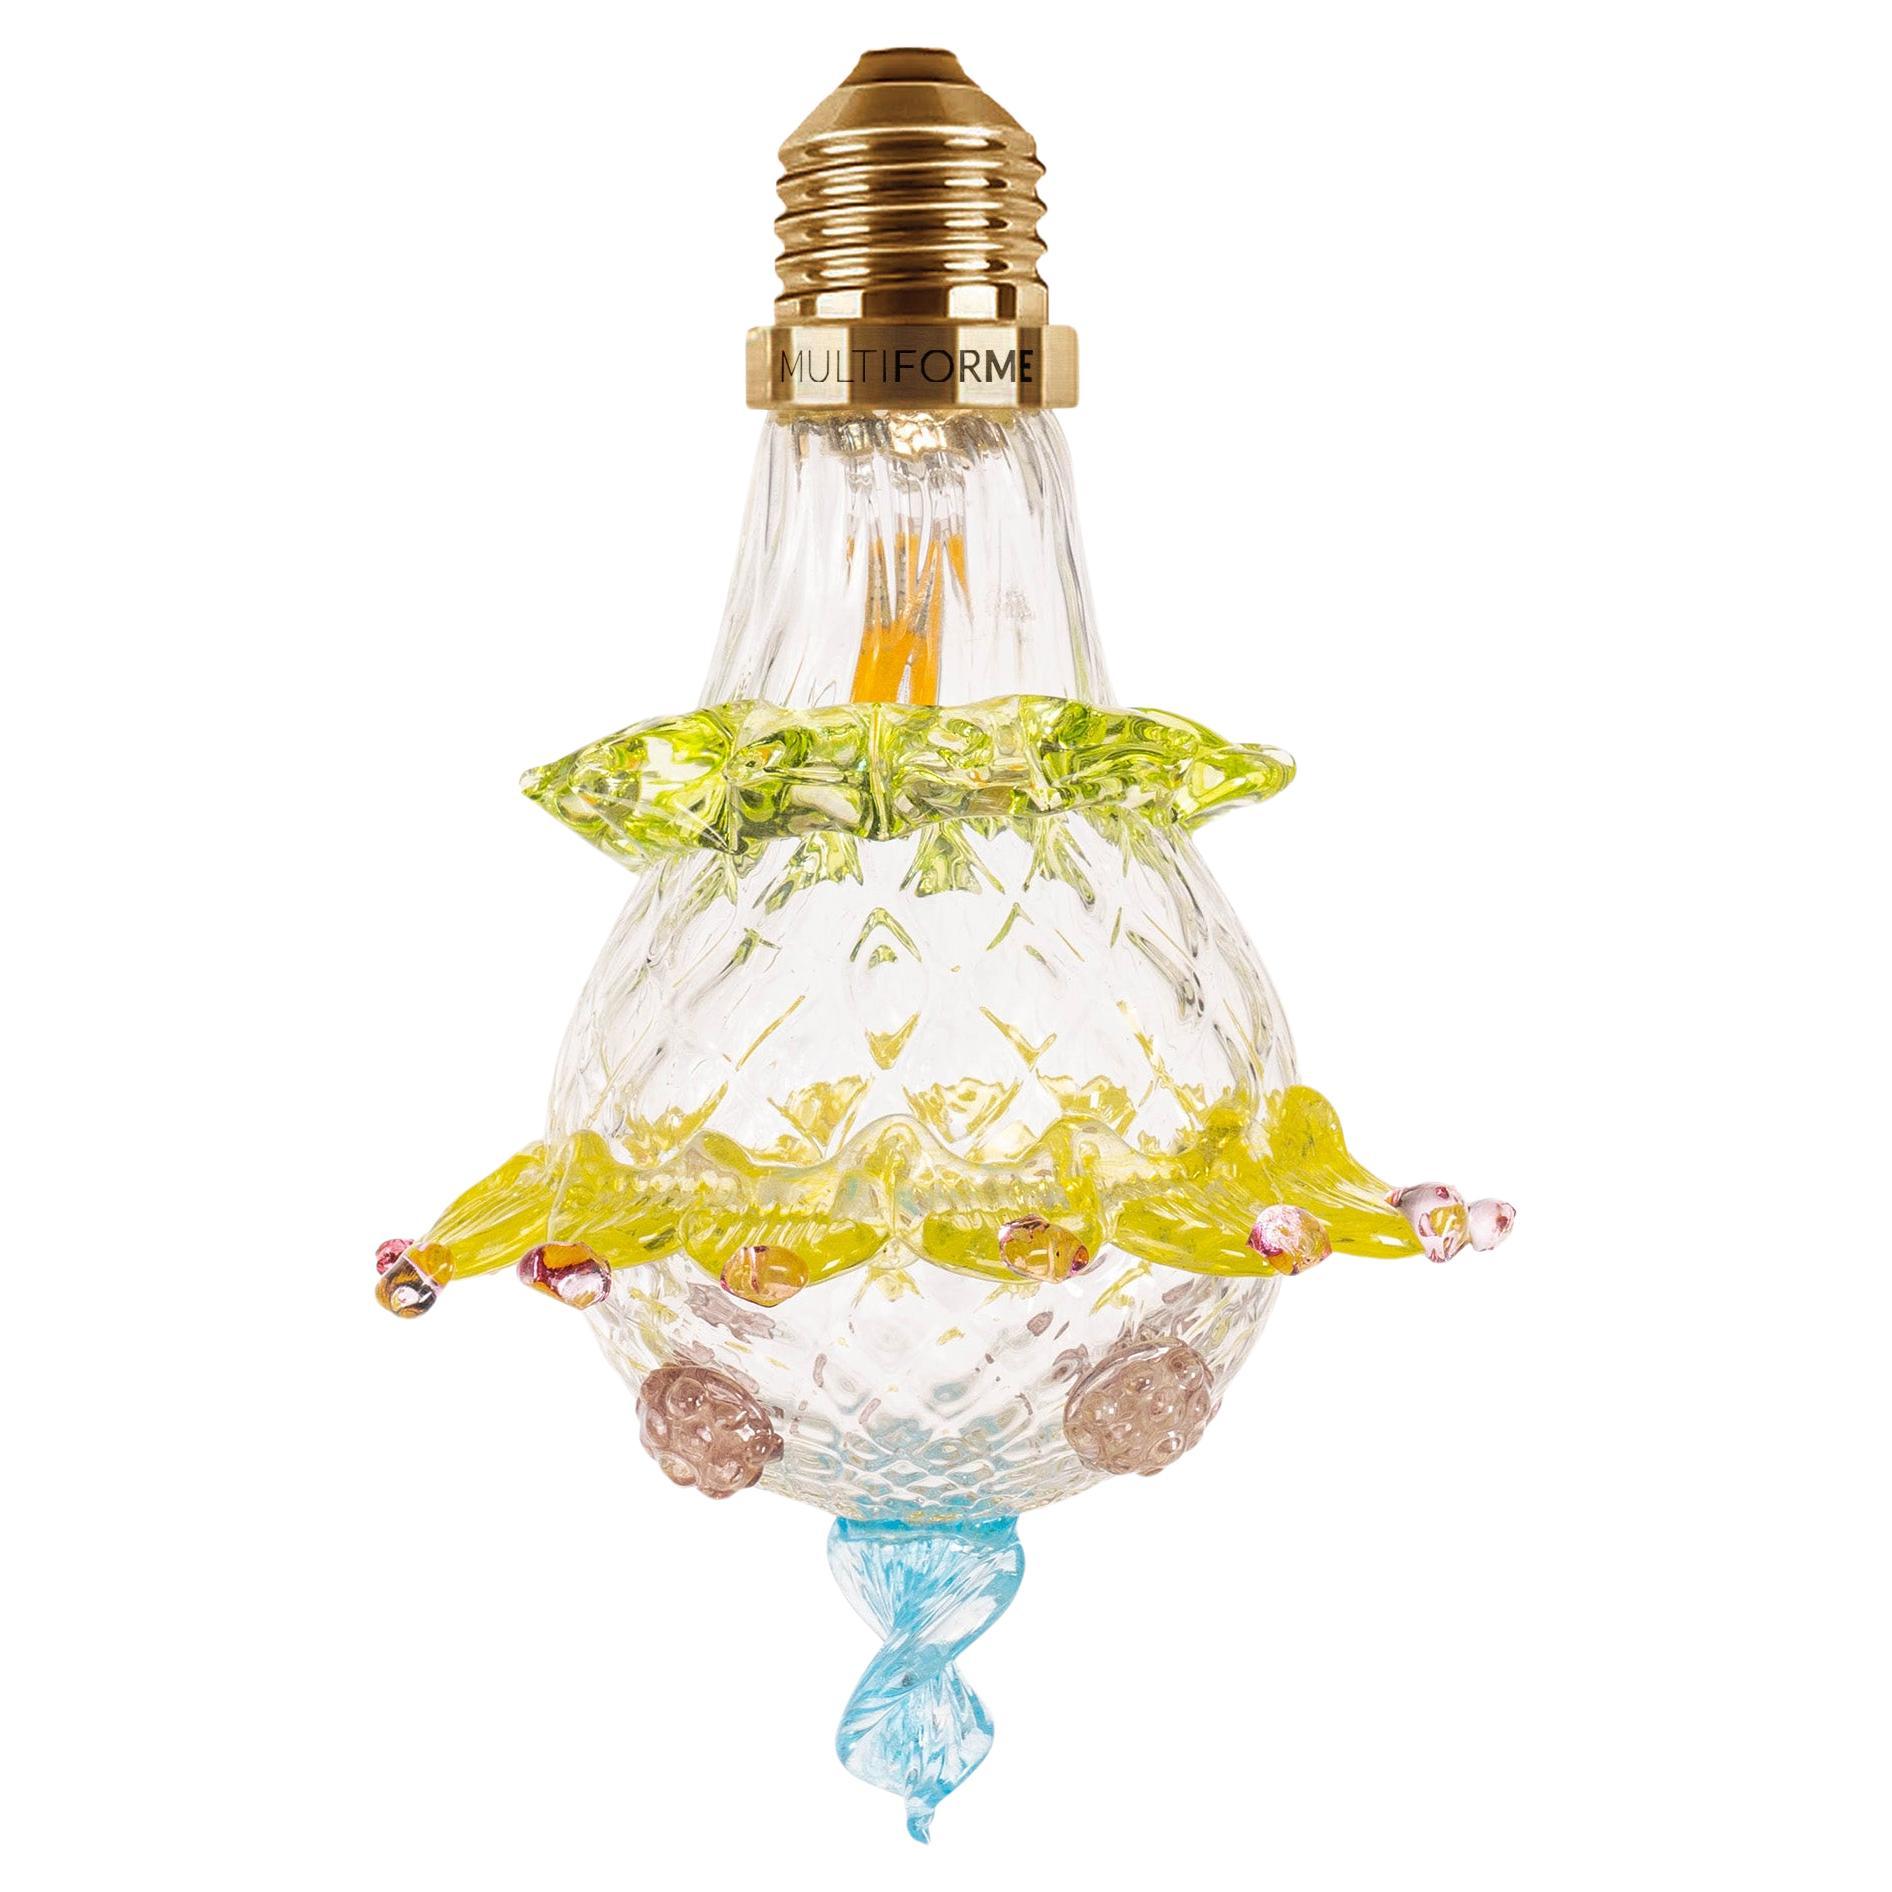 Künstlerischer Kerzenleuchter aus Glas, Muranoglas, Murano-Glühbirne, Marcantonio X Multiforme #06 im Angebot